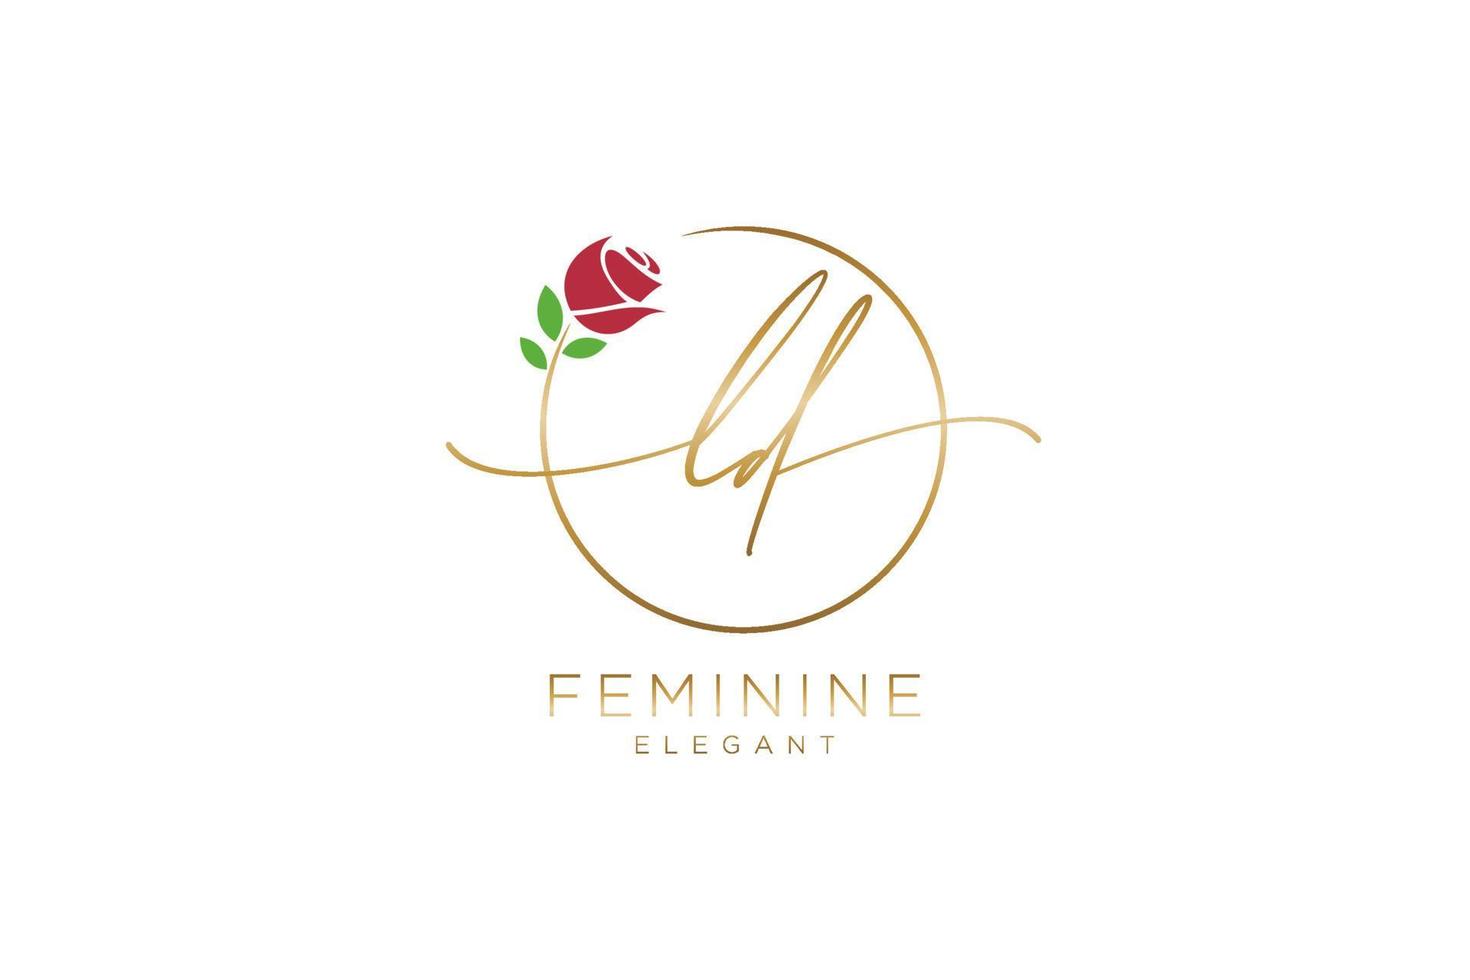 monogramme de beauté du logo féminin initial ld et design élégant du logo, logo manuscrit de la signature initiale, mariage, mode, floral et botanique avec modèle créatif. vecteur